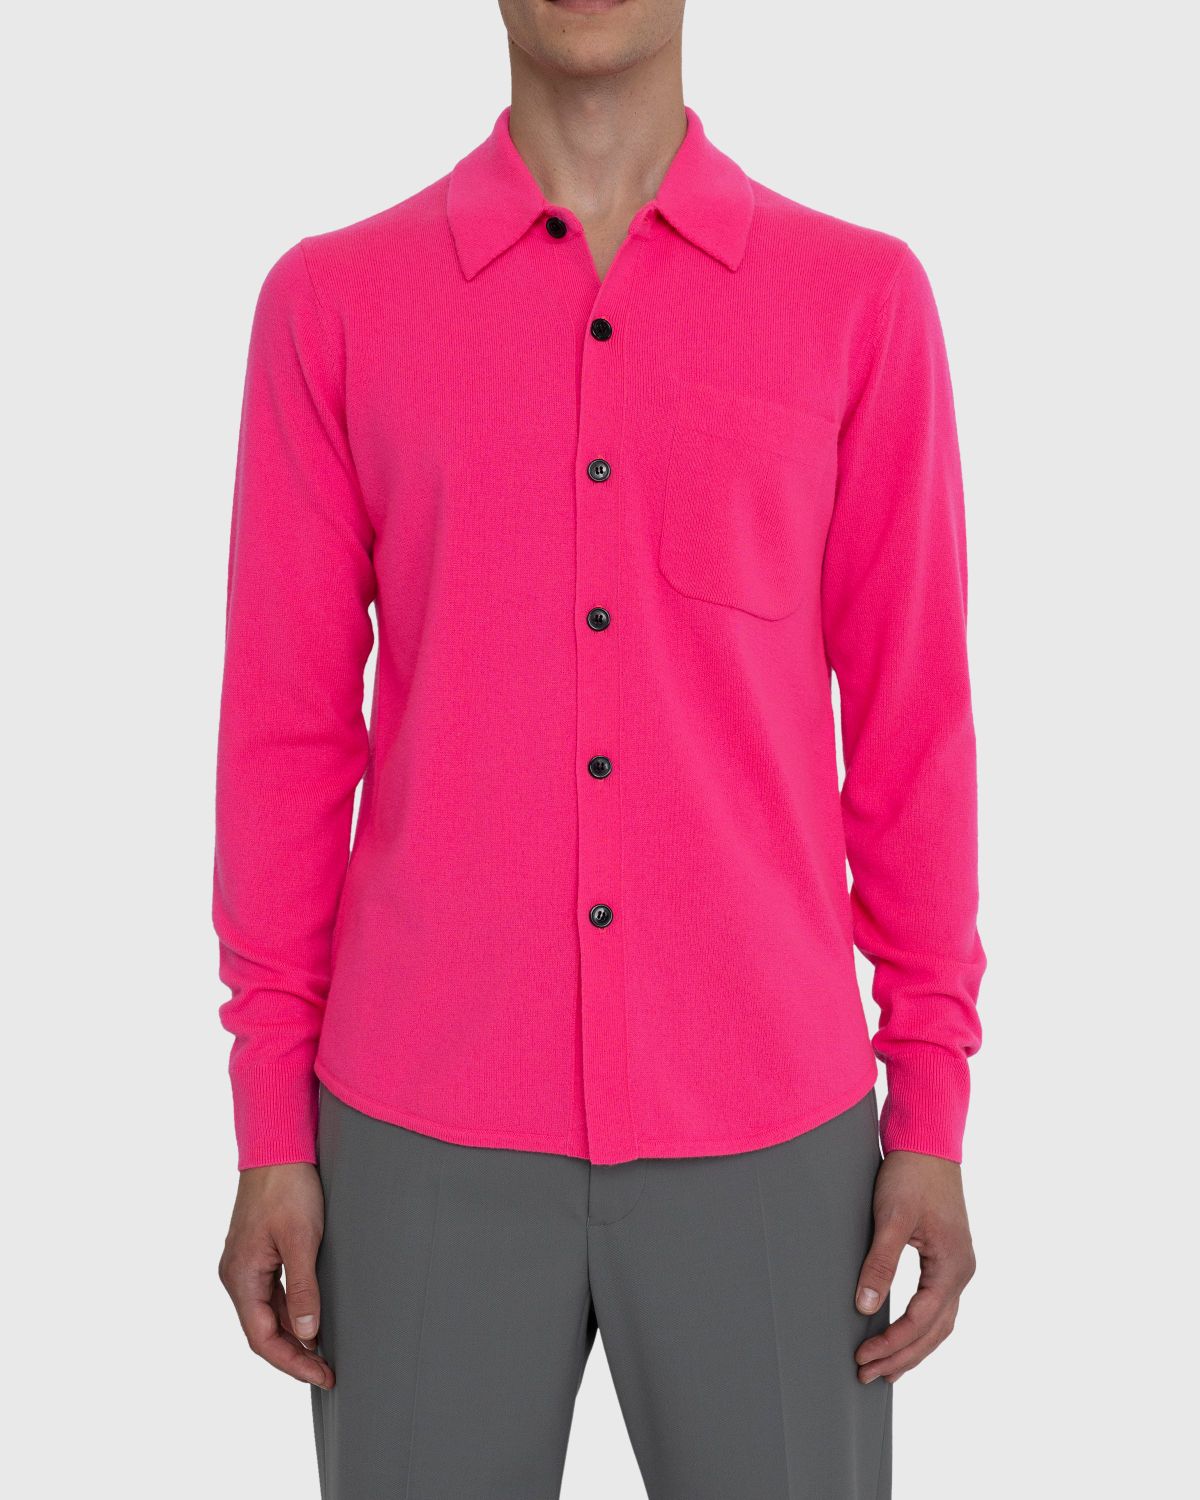 Dries van Noten – Never Cardigan - Knitwear - Pink - Image 2